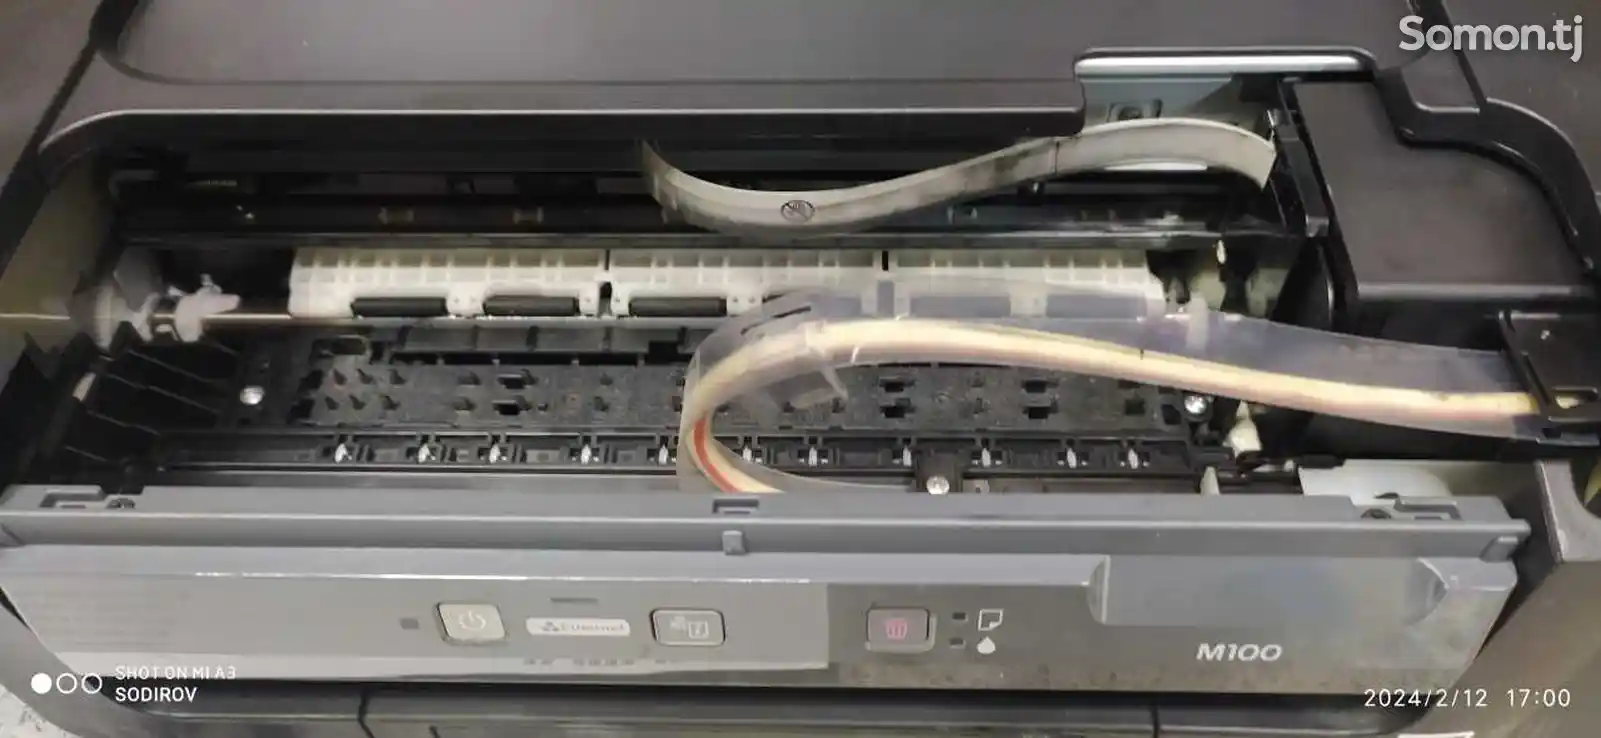 Принтер струйный черно белый Epson m100-2